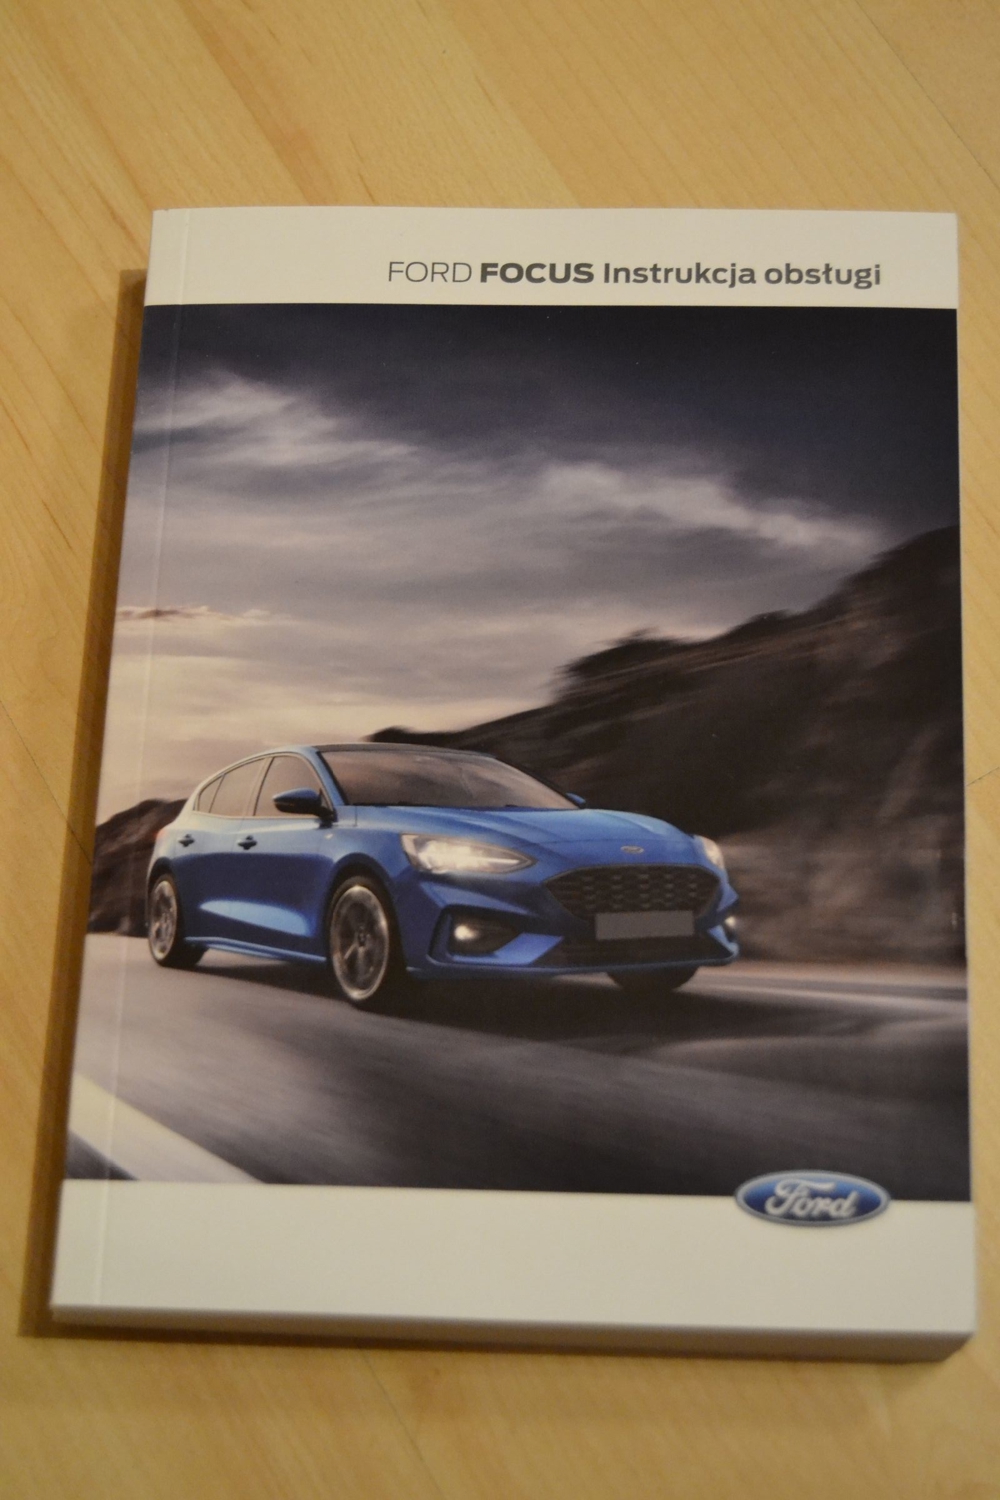 Verkaufe polnische Betriebsanleitung für den Ford Focus, aktuelle Ausgabe 2019-03